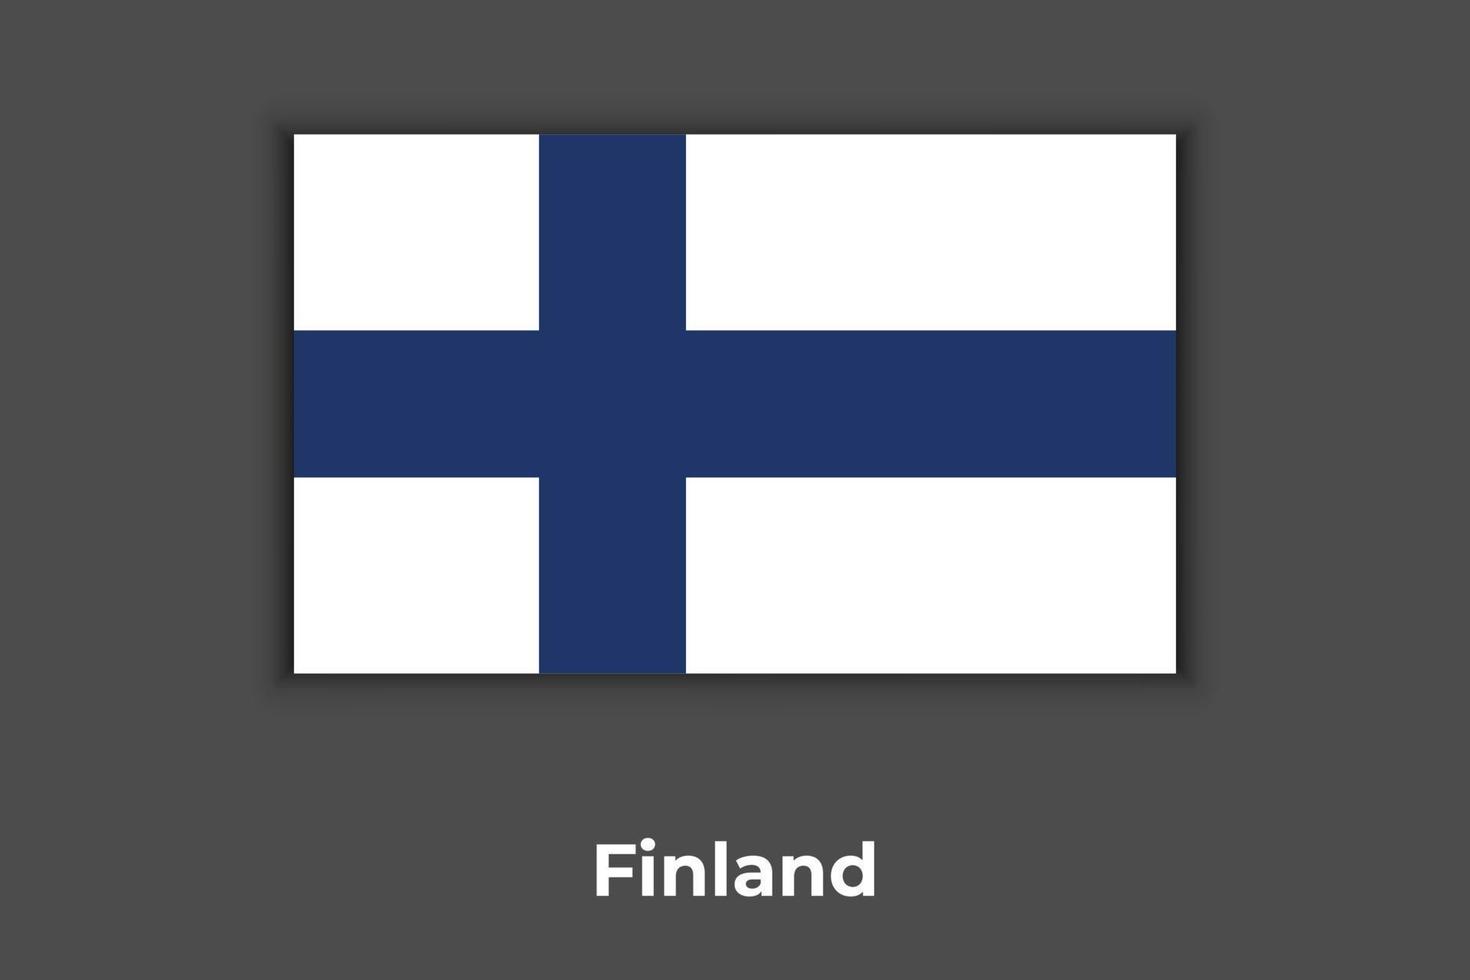 bandeira finlandesa, cores oficiais e proporção corretamente. bandeira nacional da Finlândia. ilustração vetorial plana. vetor